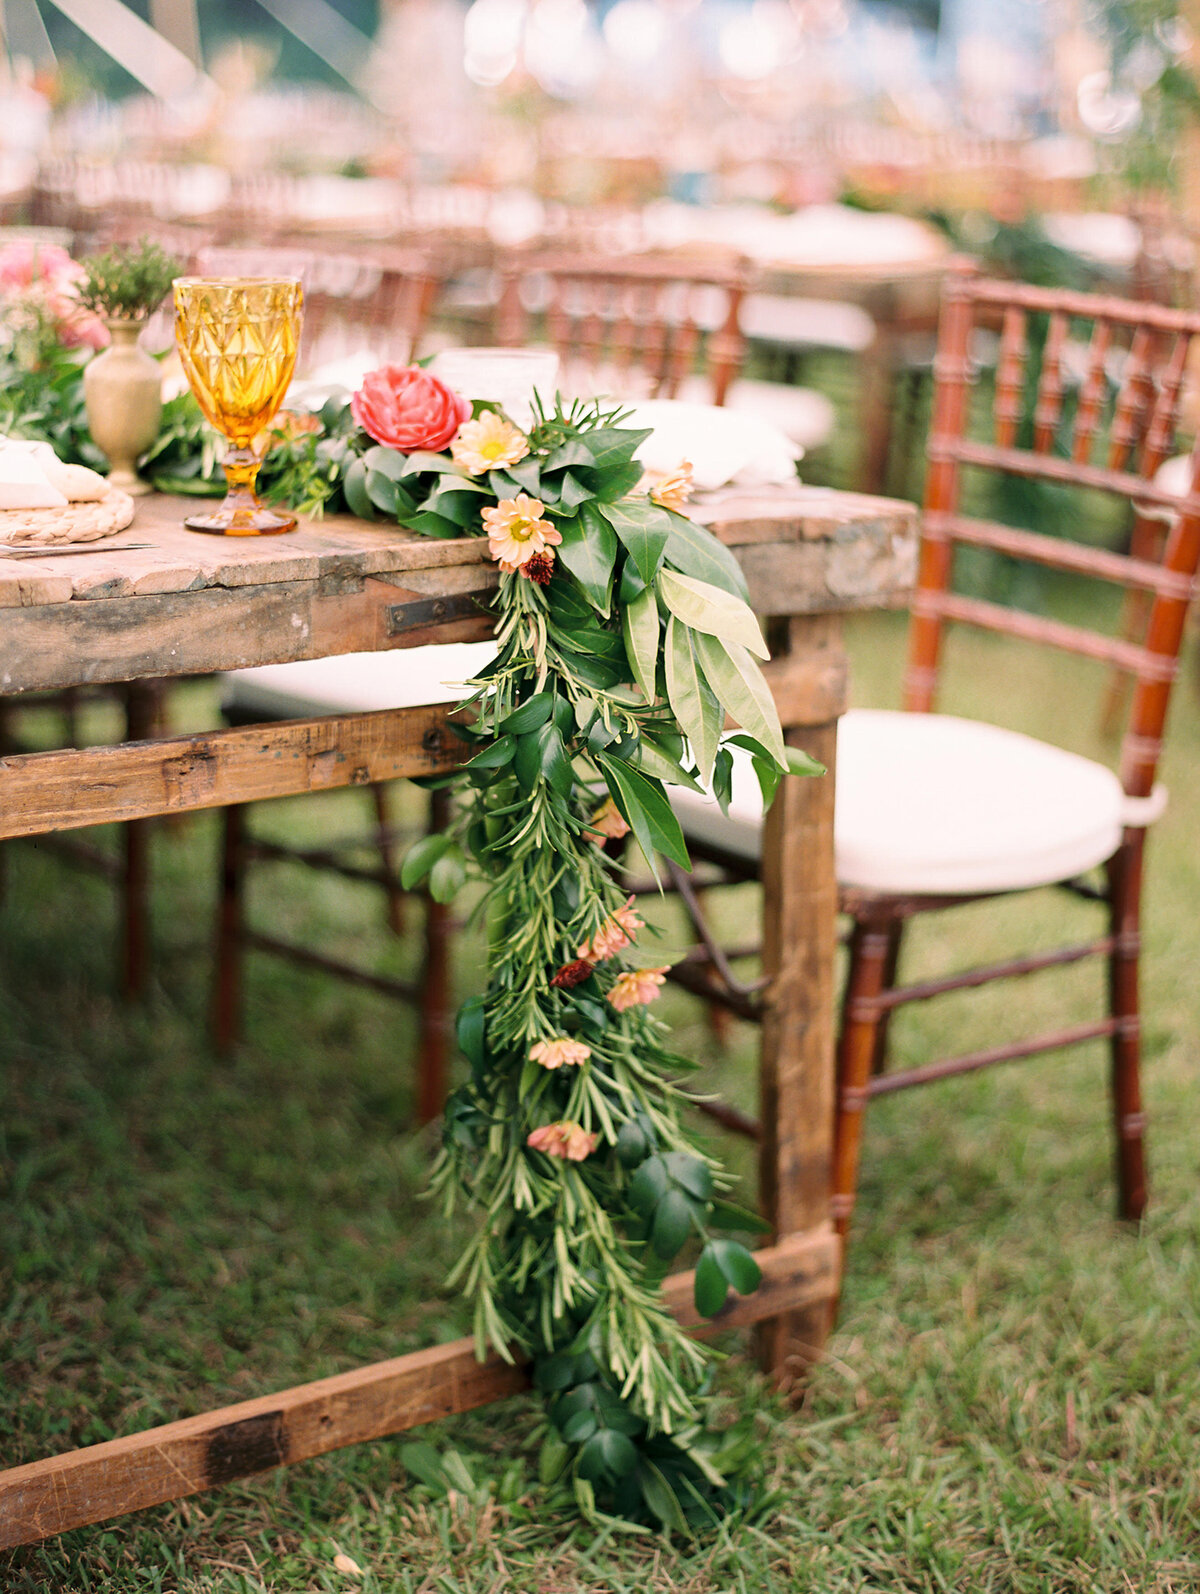 Wedding reception tables at outdoor wedding reception